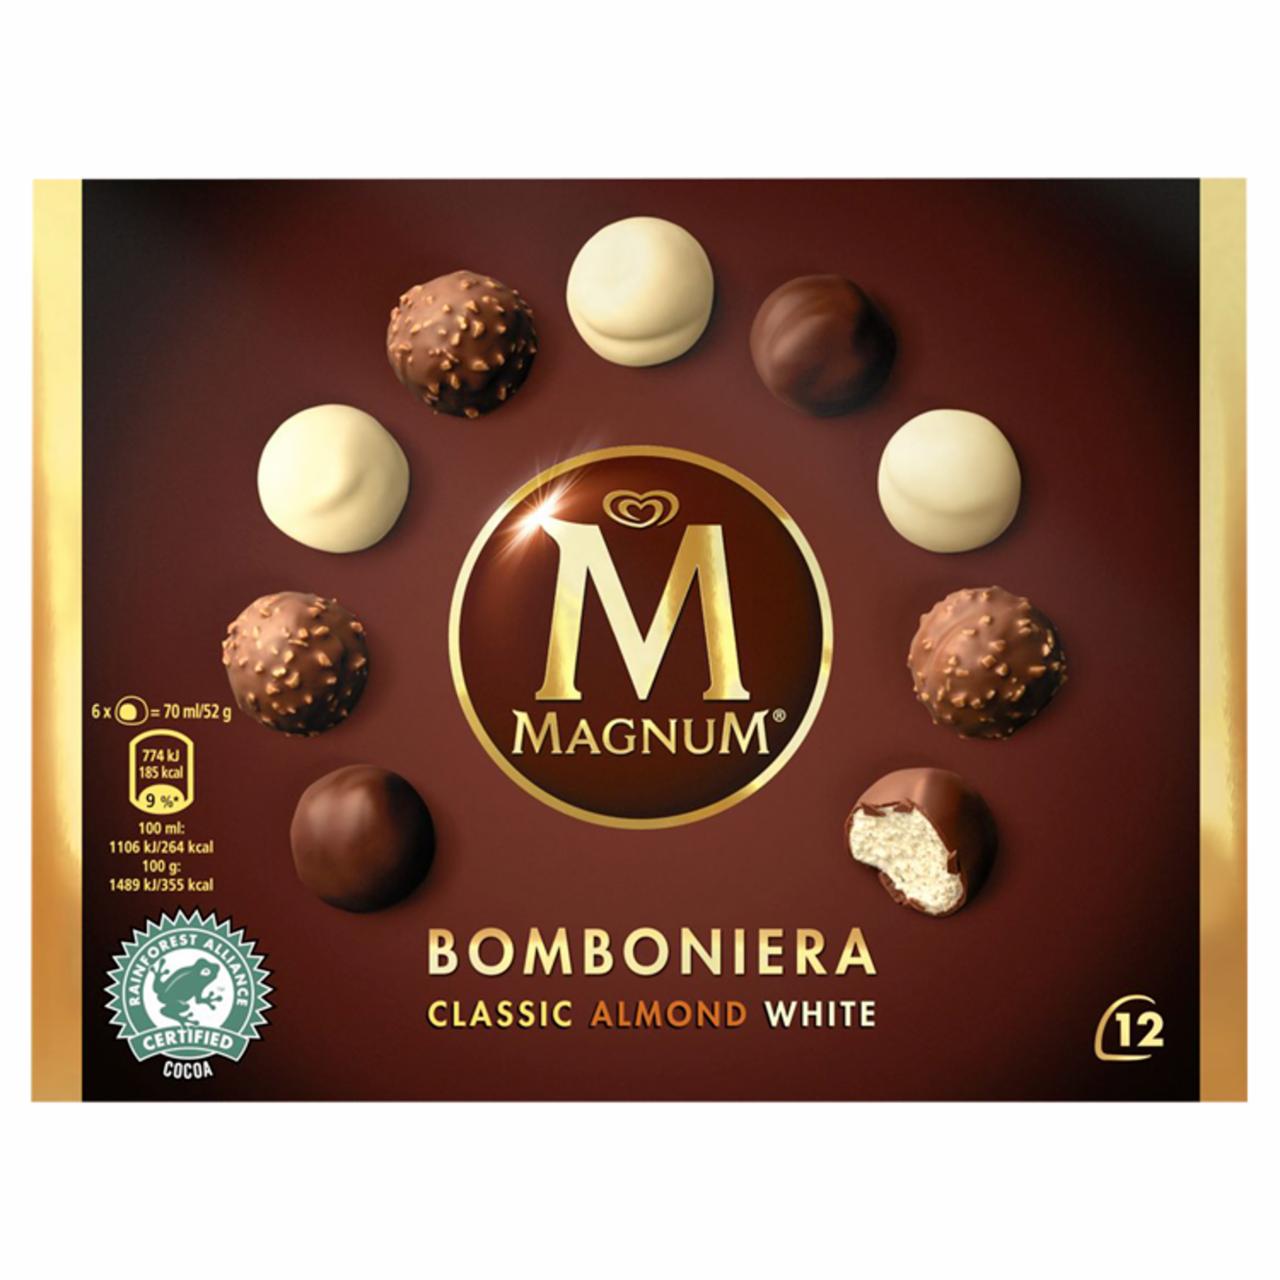 Képek - Magnum Bomboniera jégkrém Classic Mandula-Fehér Csokoládé 12 x 12 ml